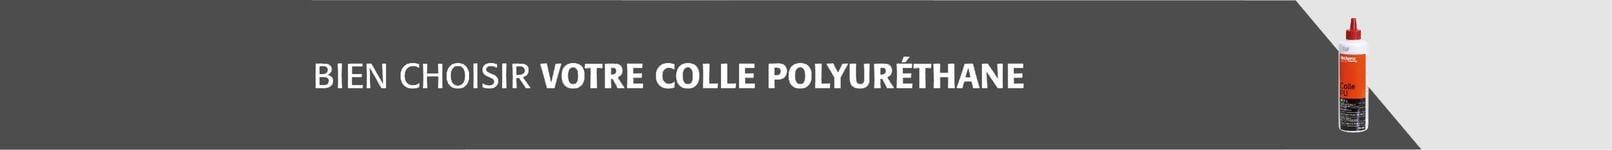 Bien choisir votre colle polyuréthane